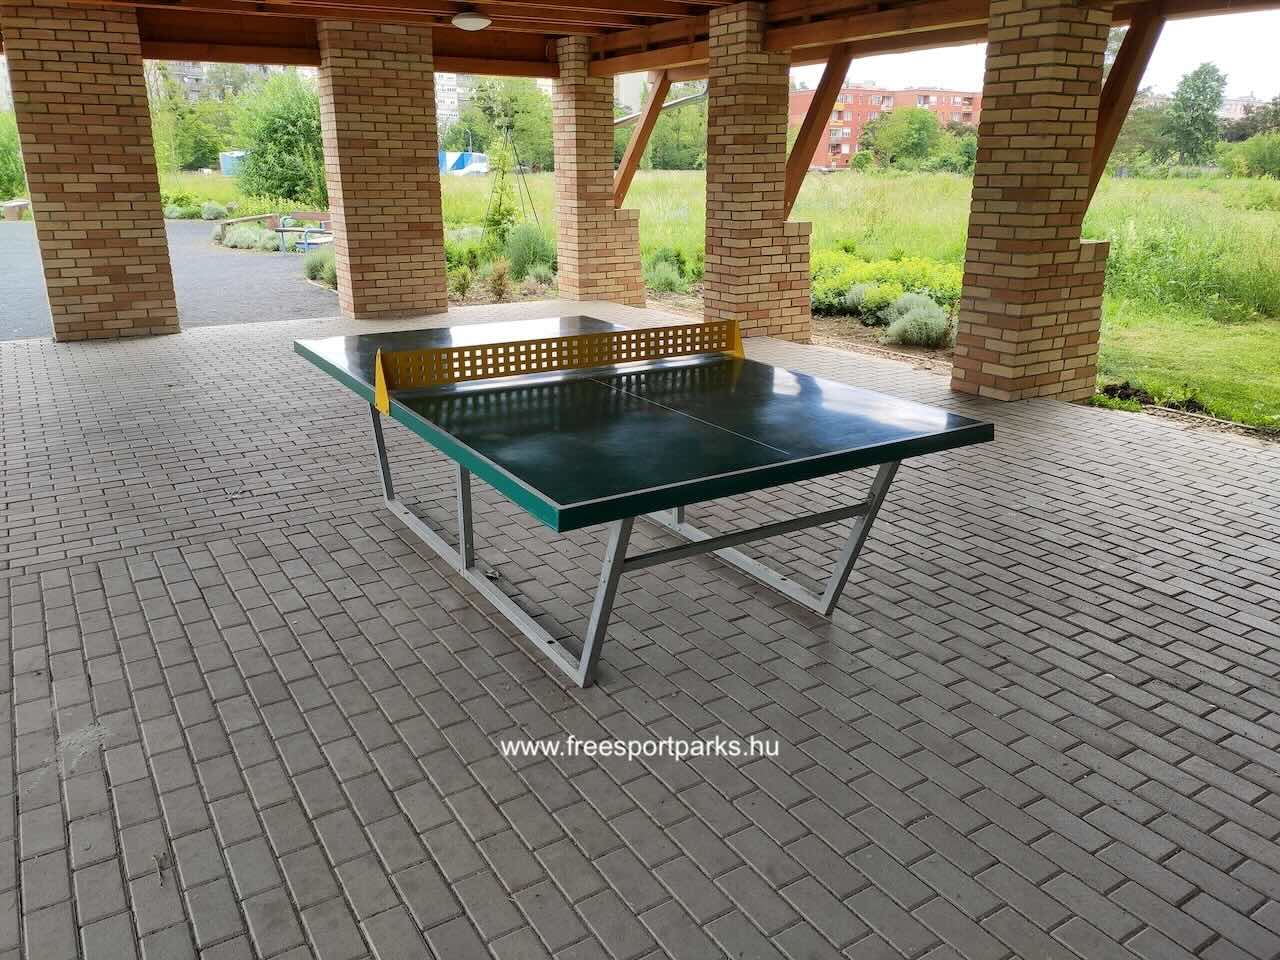 Ping-Pong asztal, Sportliget Szombathely - Free Sport Parks Térkép